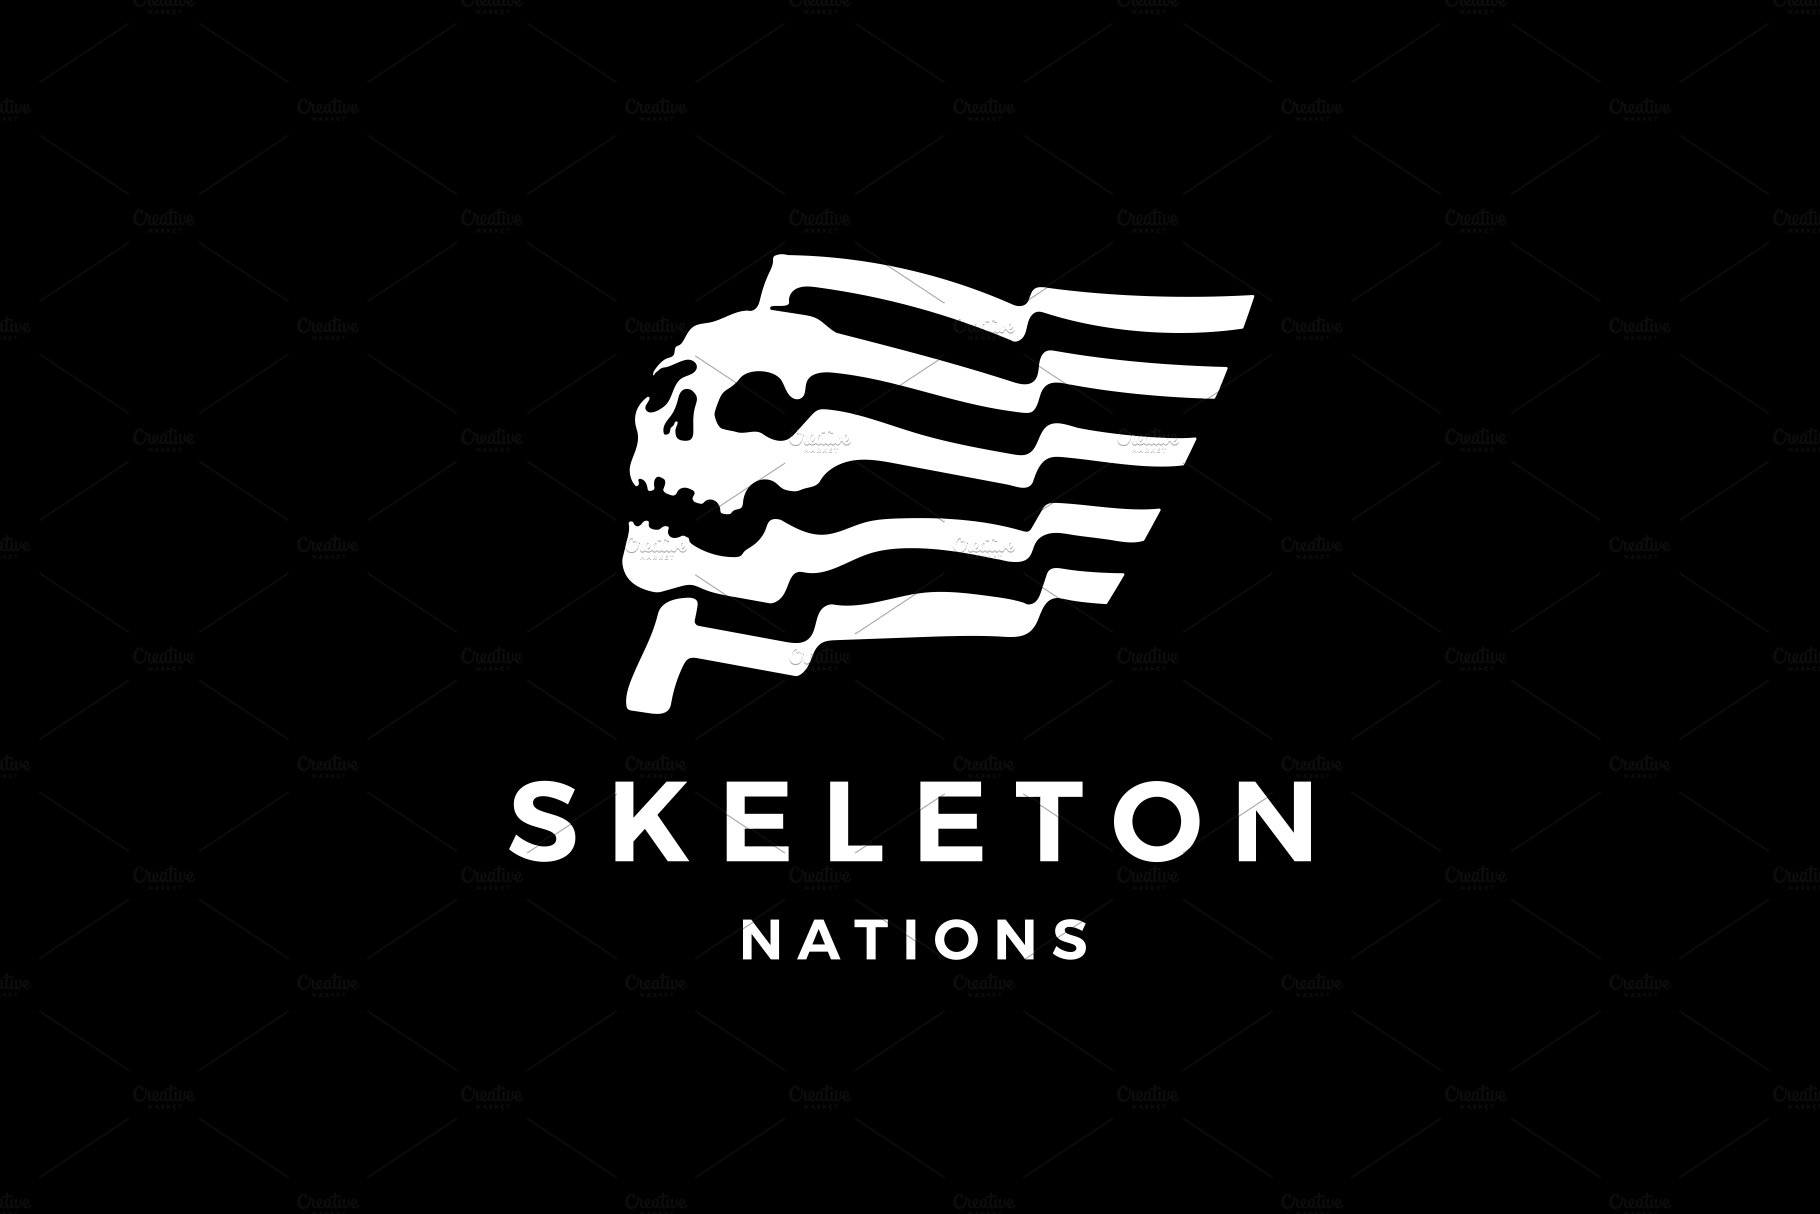 skull flag death nation logo cover image.